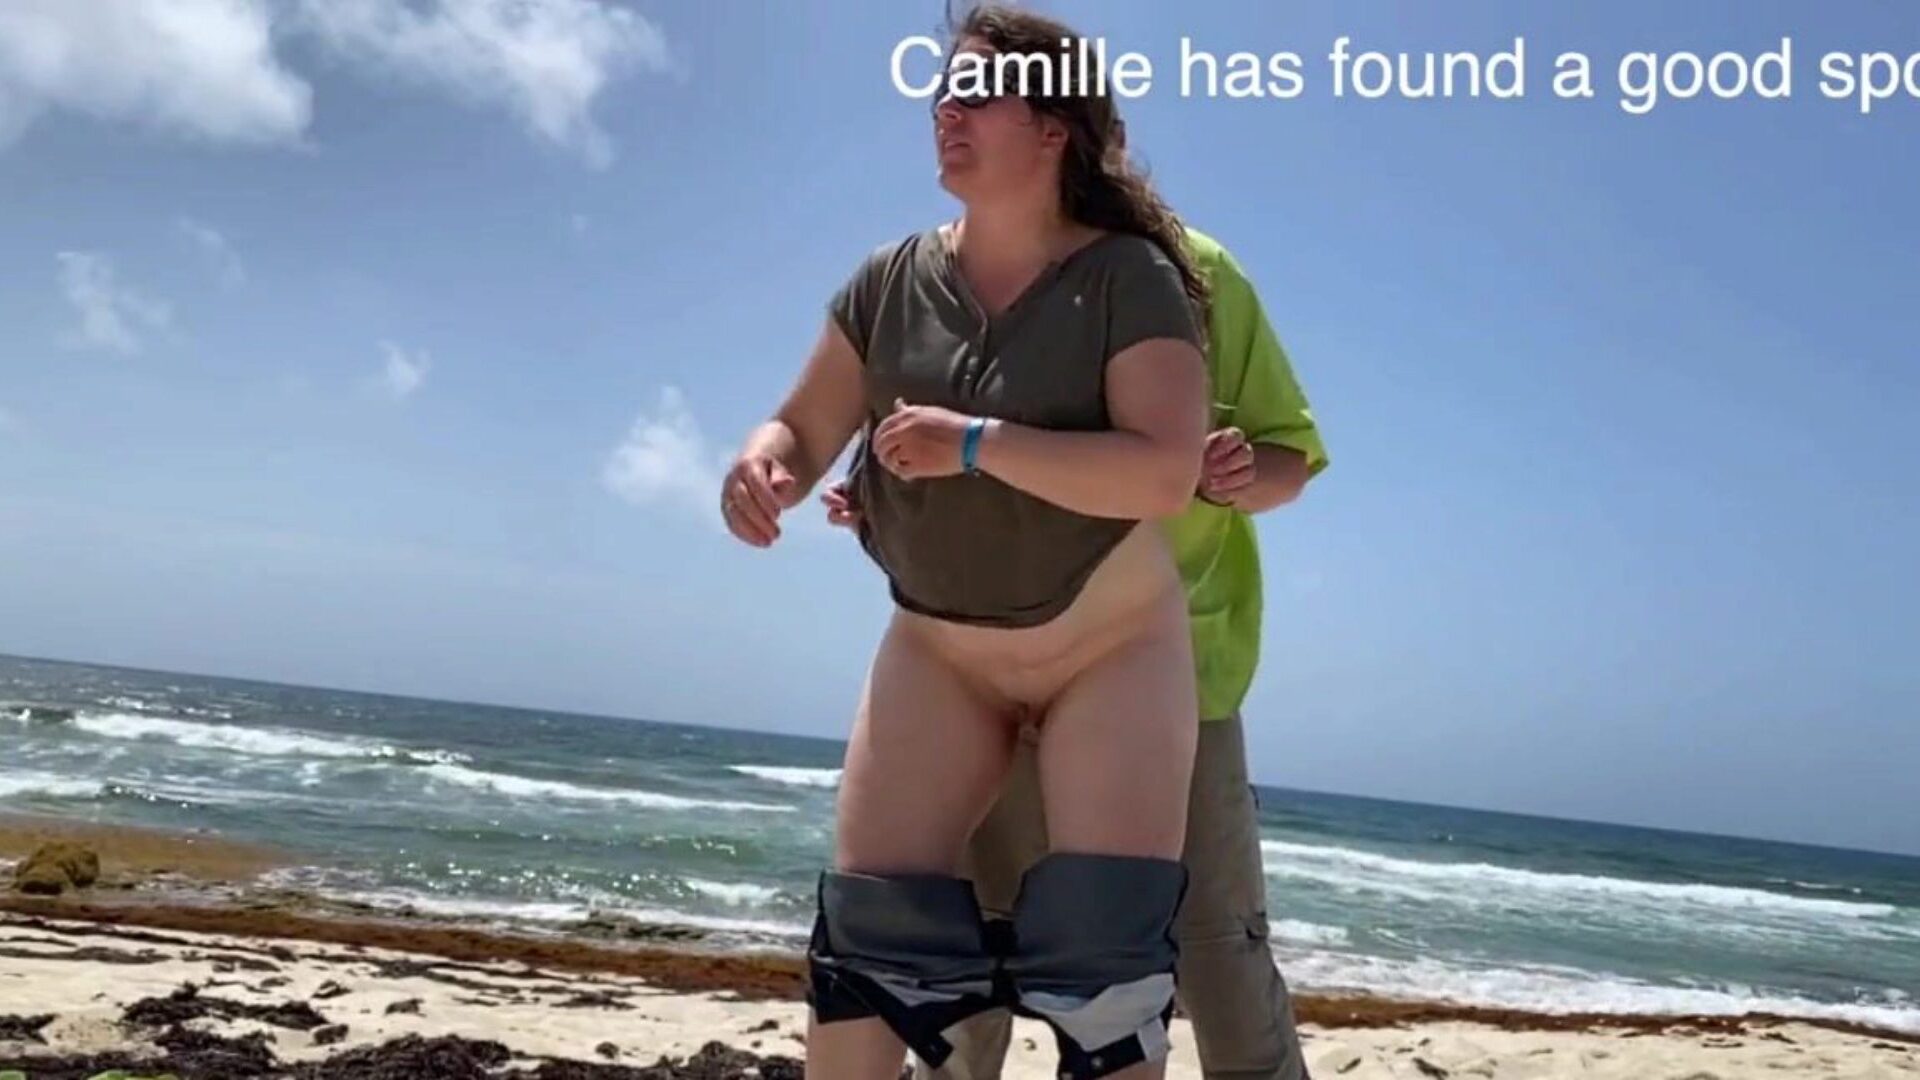 camille nézte, ahogy púpos a tengerparton. A camille értékes helyet talált, és néhány ember zajos volt, így mindenki figyelni fog